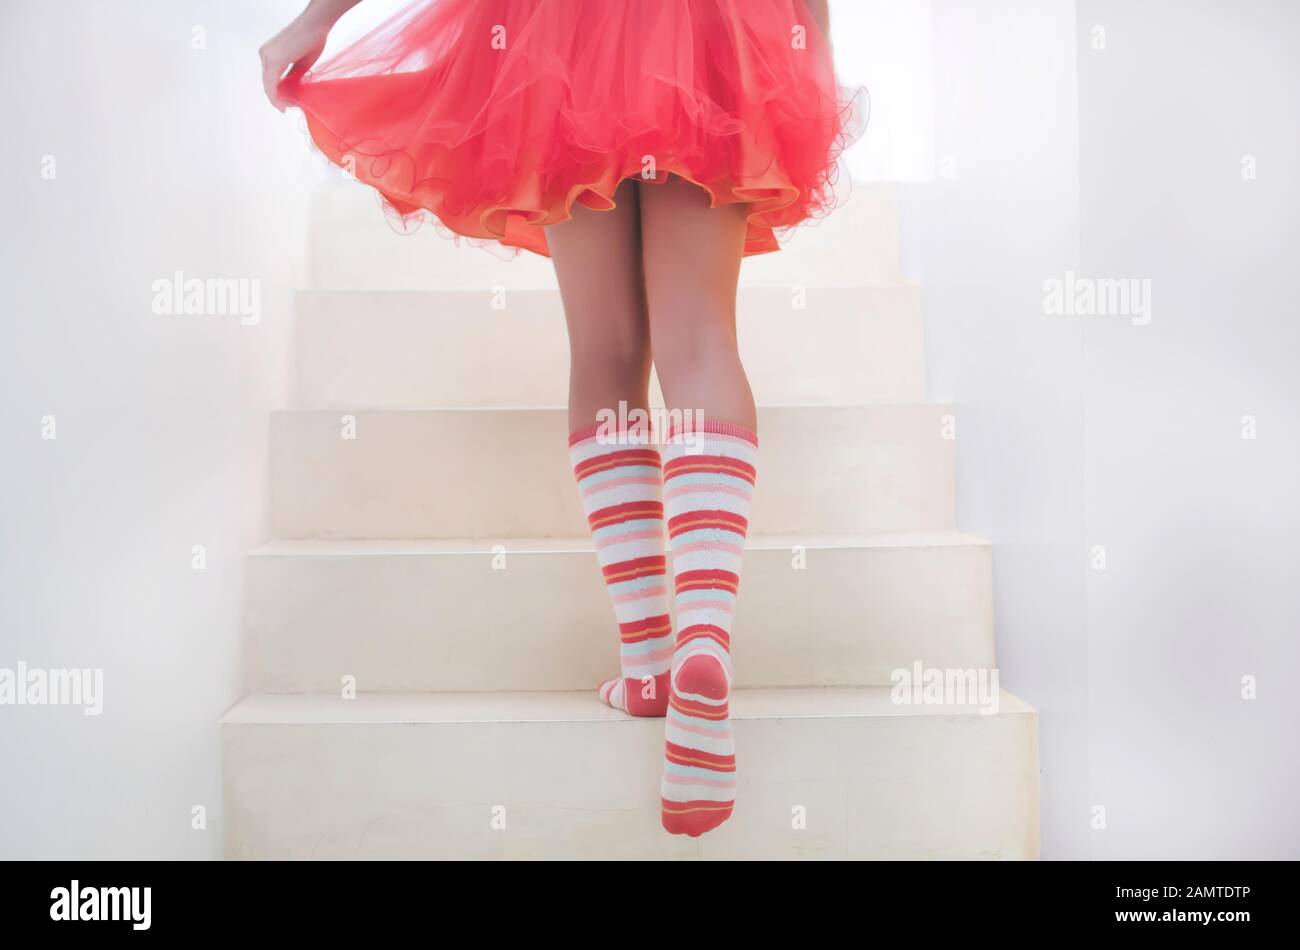 Niñas con la falda levantada fotografías e imágenes de alta resolución -  Alamy